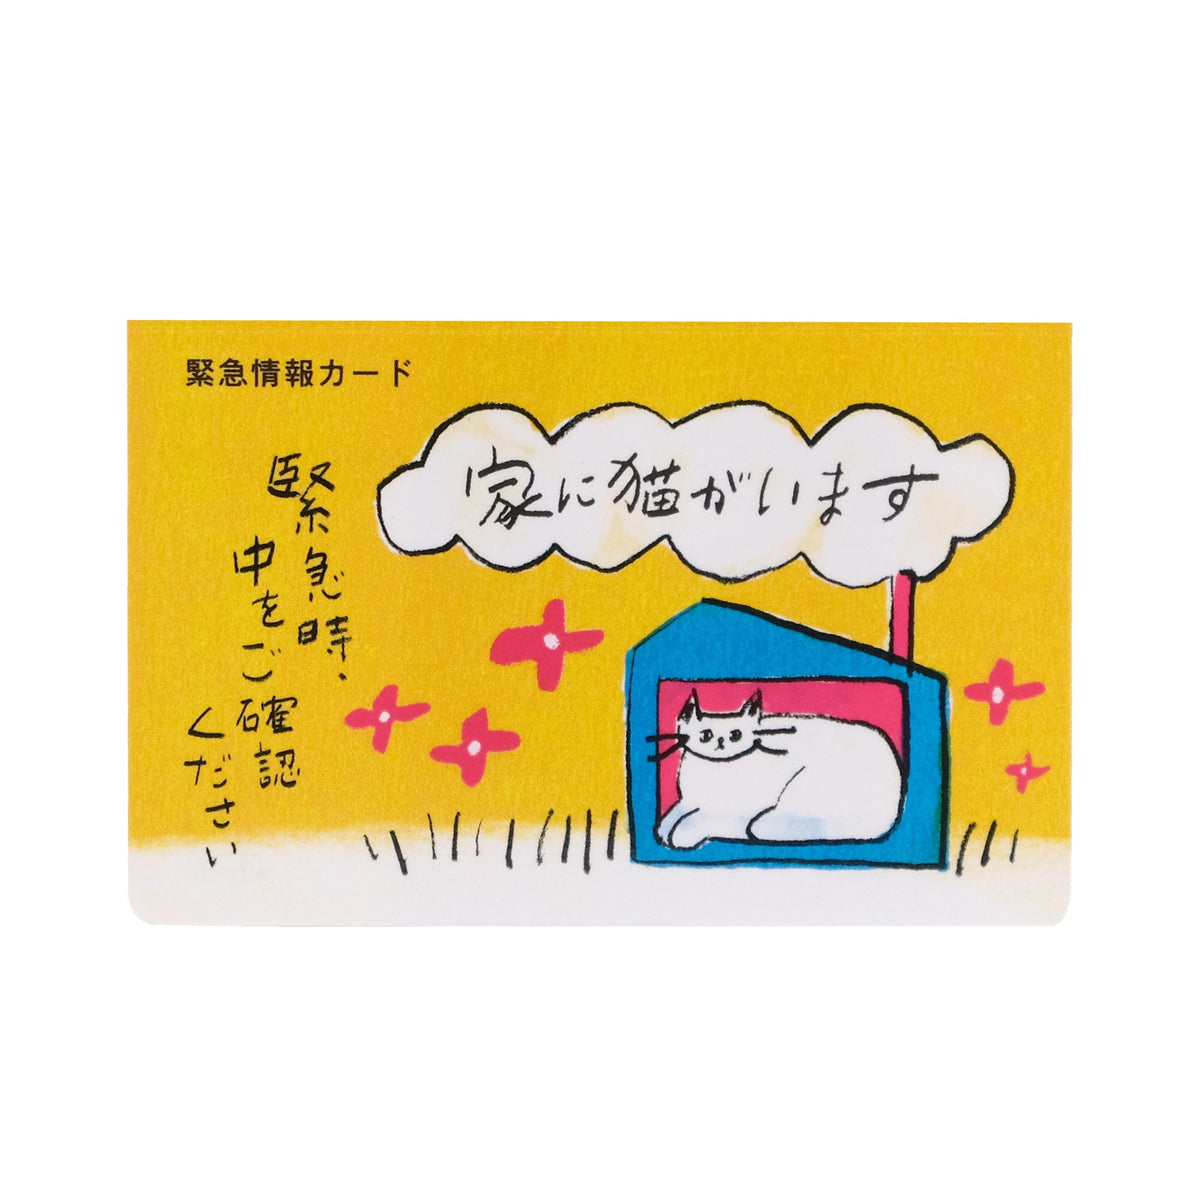 kakuo gadgets オンラインストア 家に猫がいます 緊急情報カード クレジットカードサイズ 1枚入り designed by ico  crafts